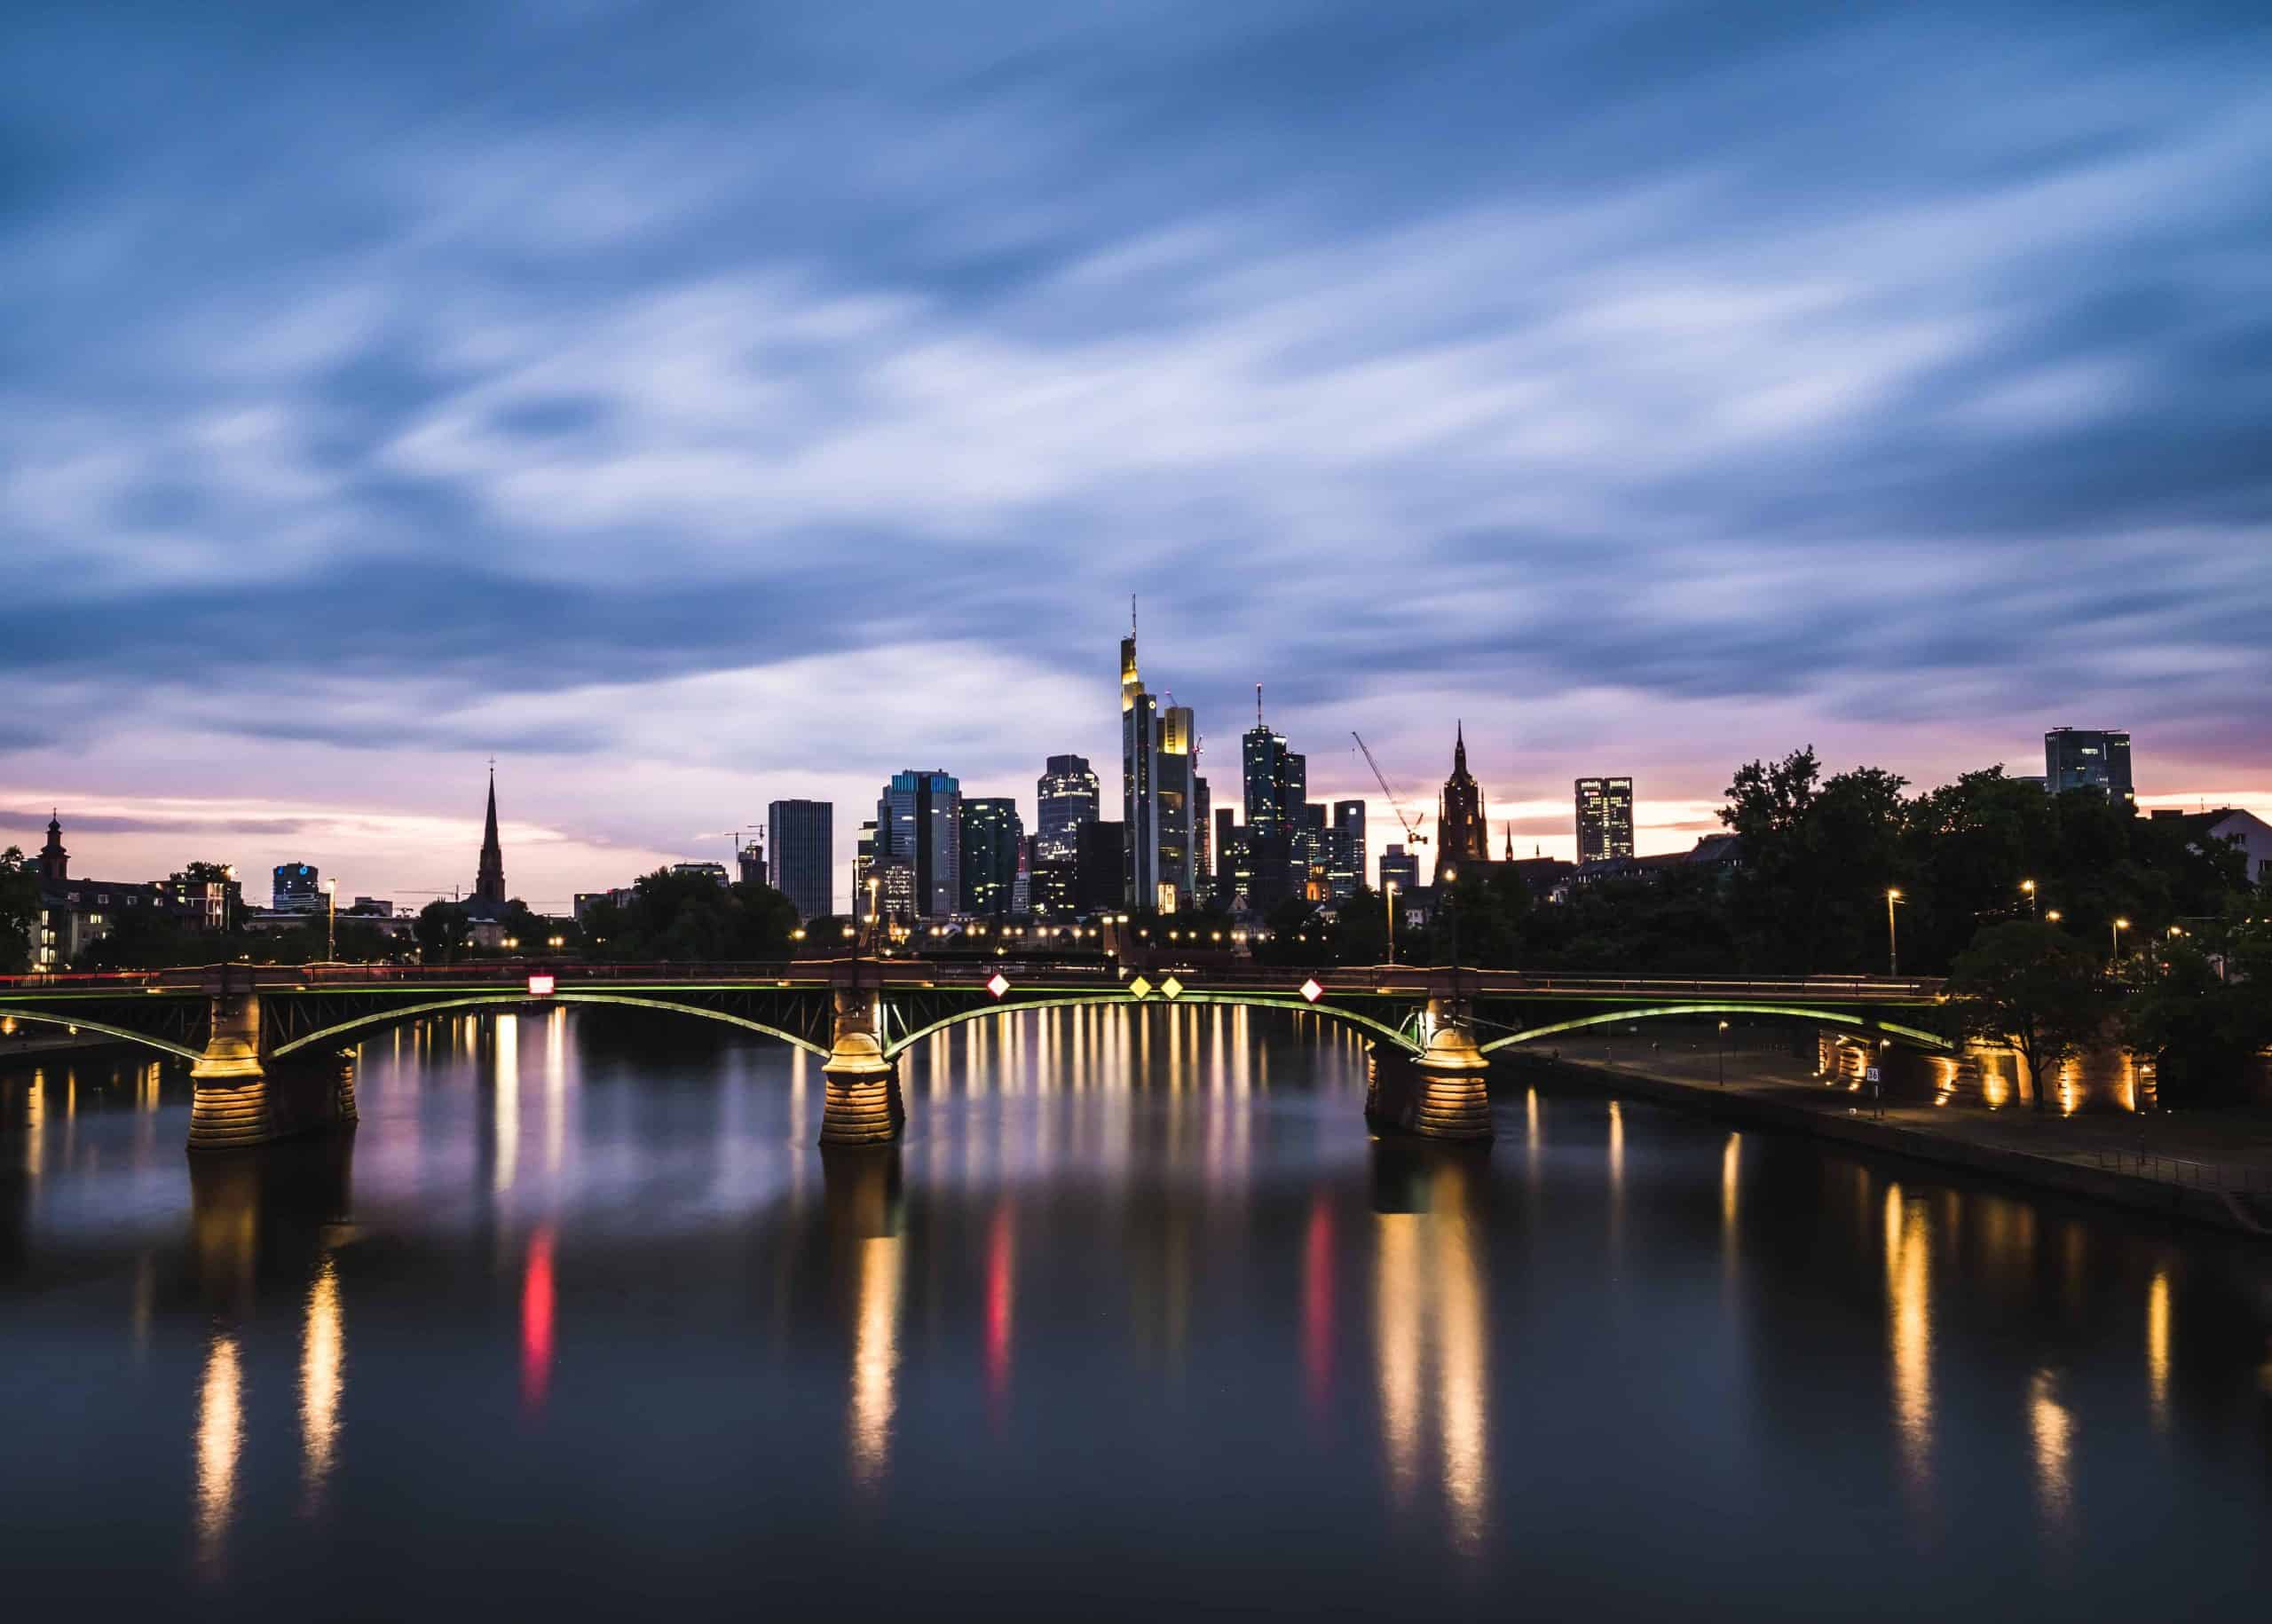 Immobilieninvestoren Frankfurt: Diese 3 Investoren kaufen aktiv an